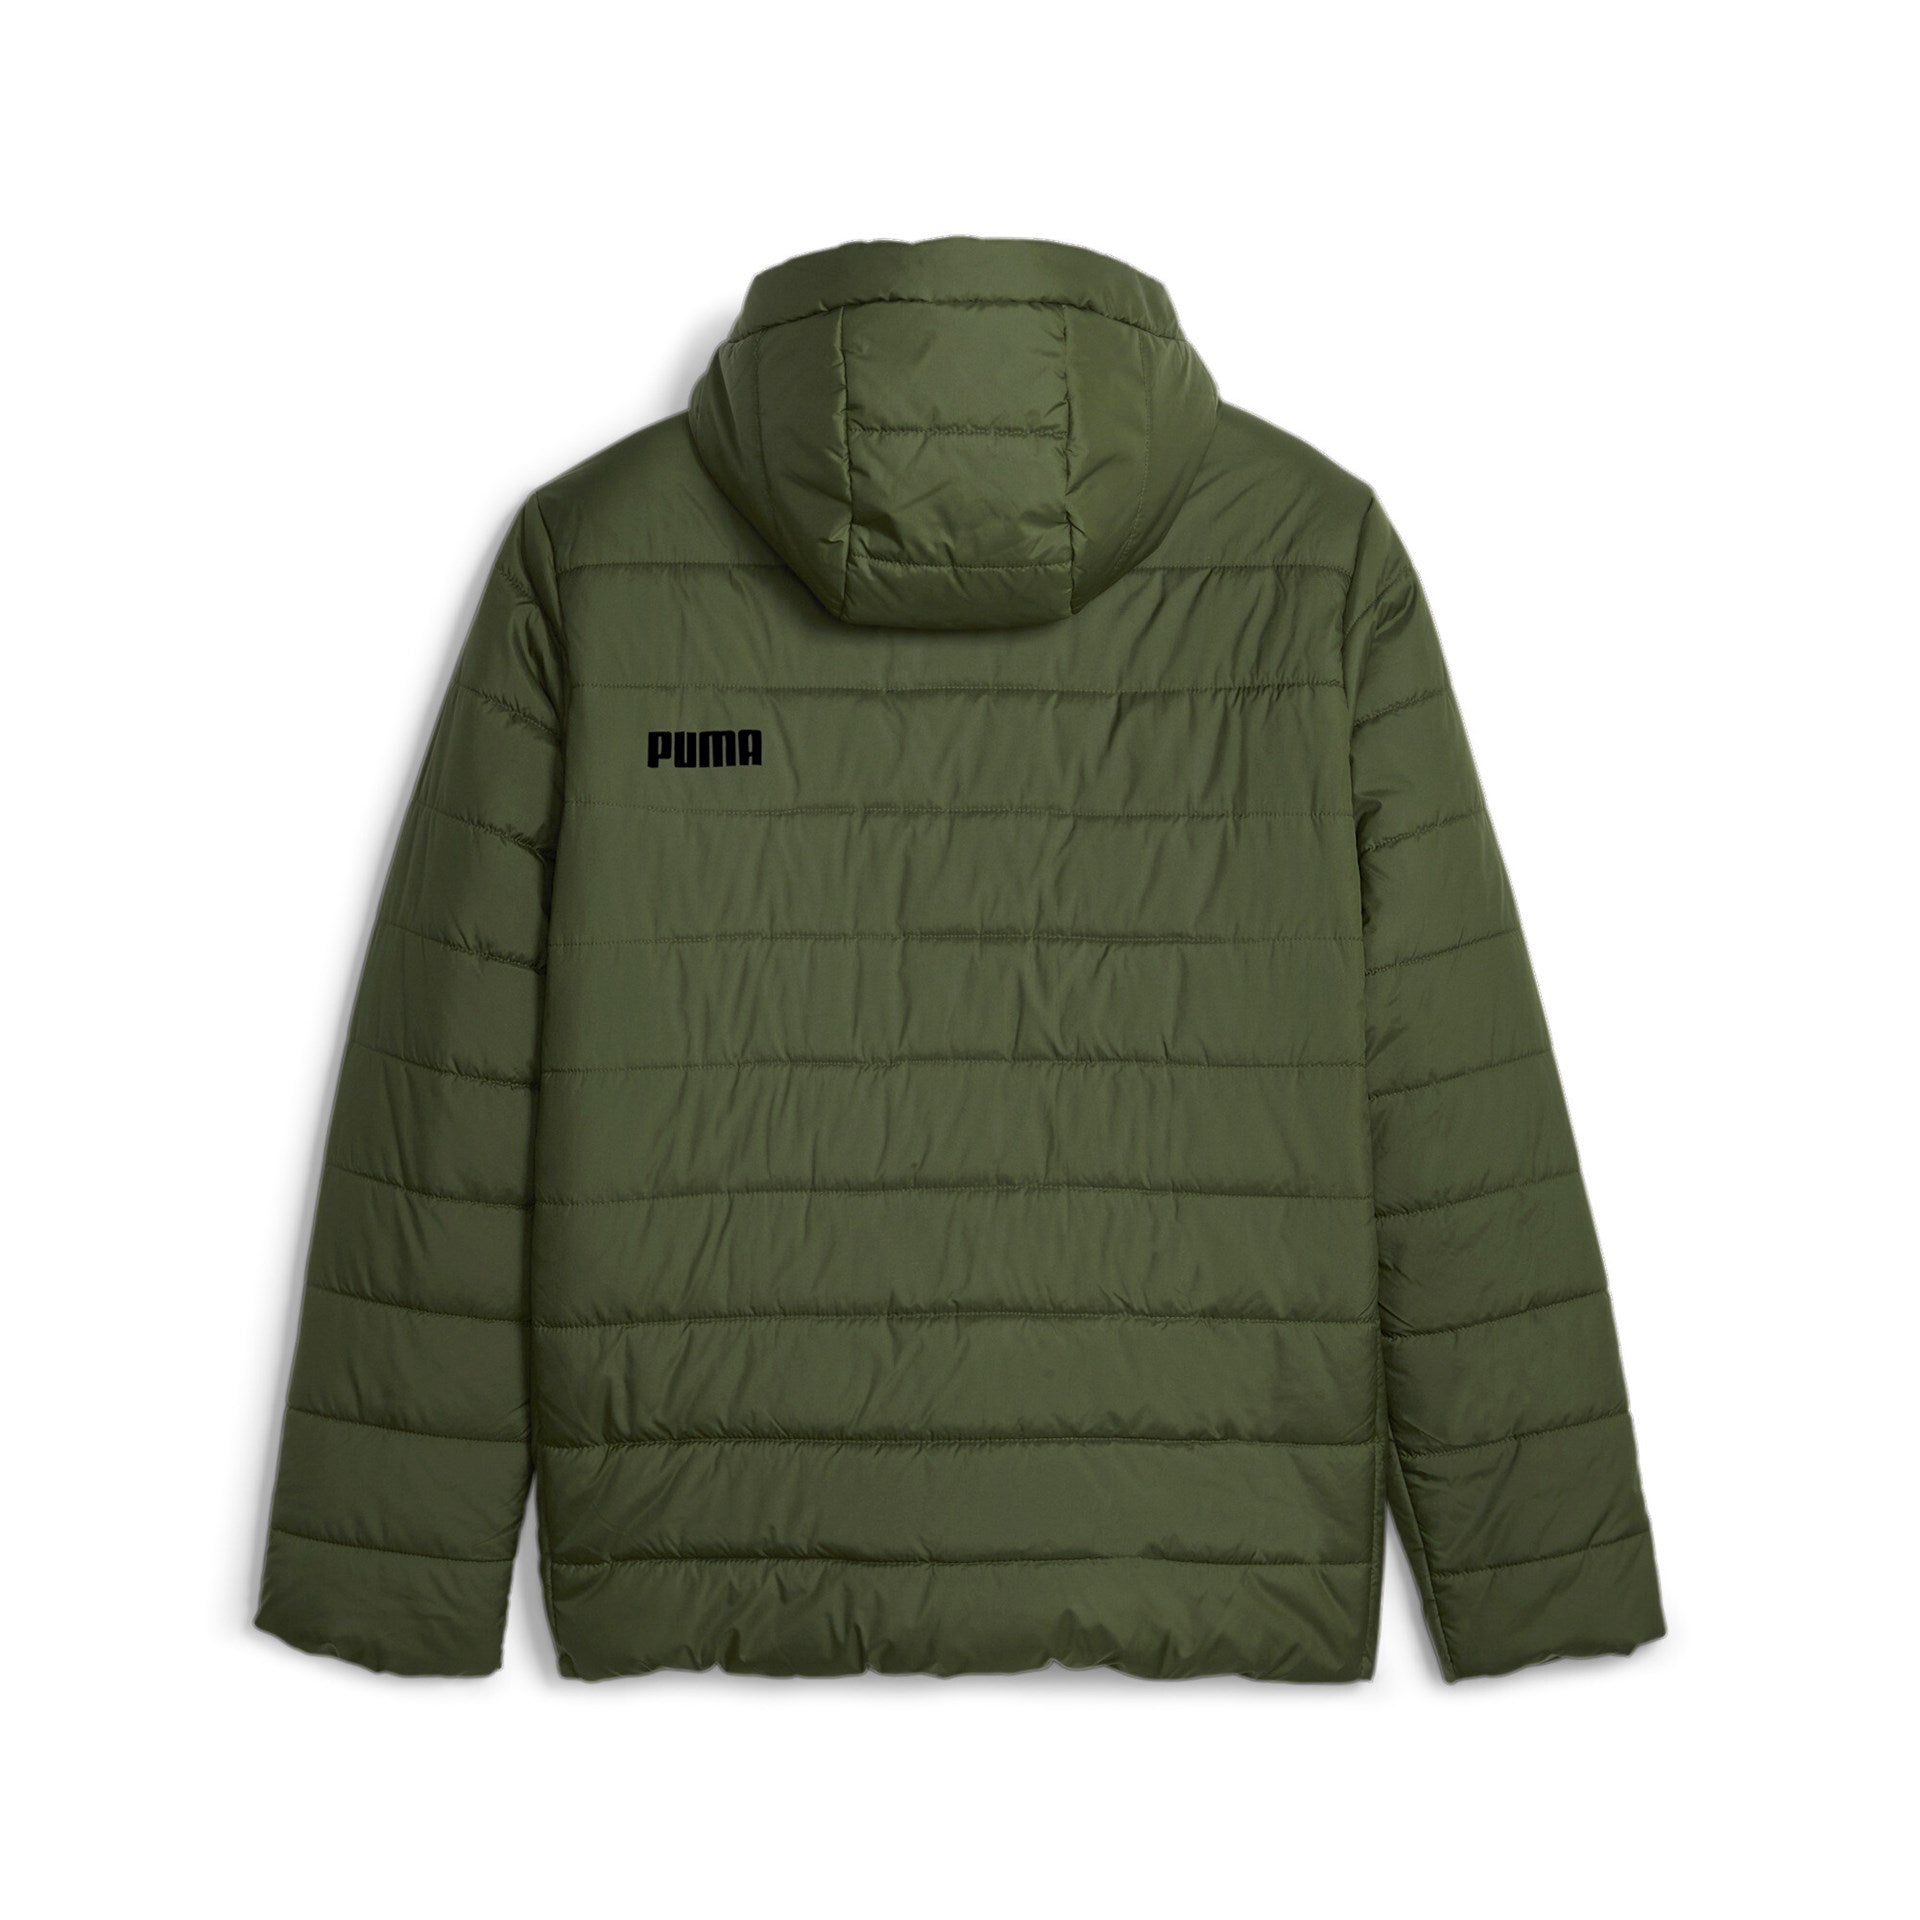 Puma men's T7 Track Jacket | Track jackets, Clothes design, Jacket shop